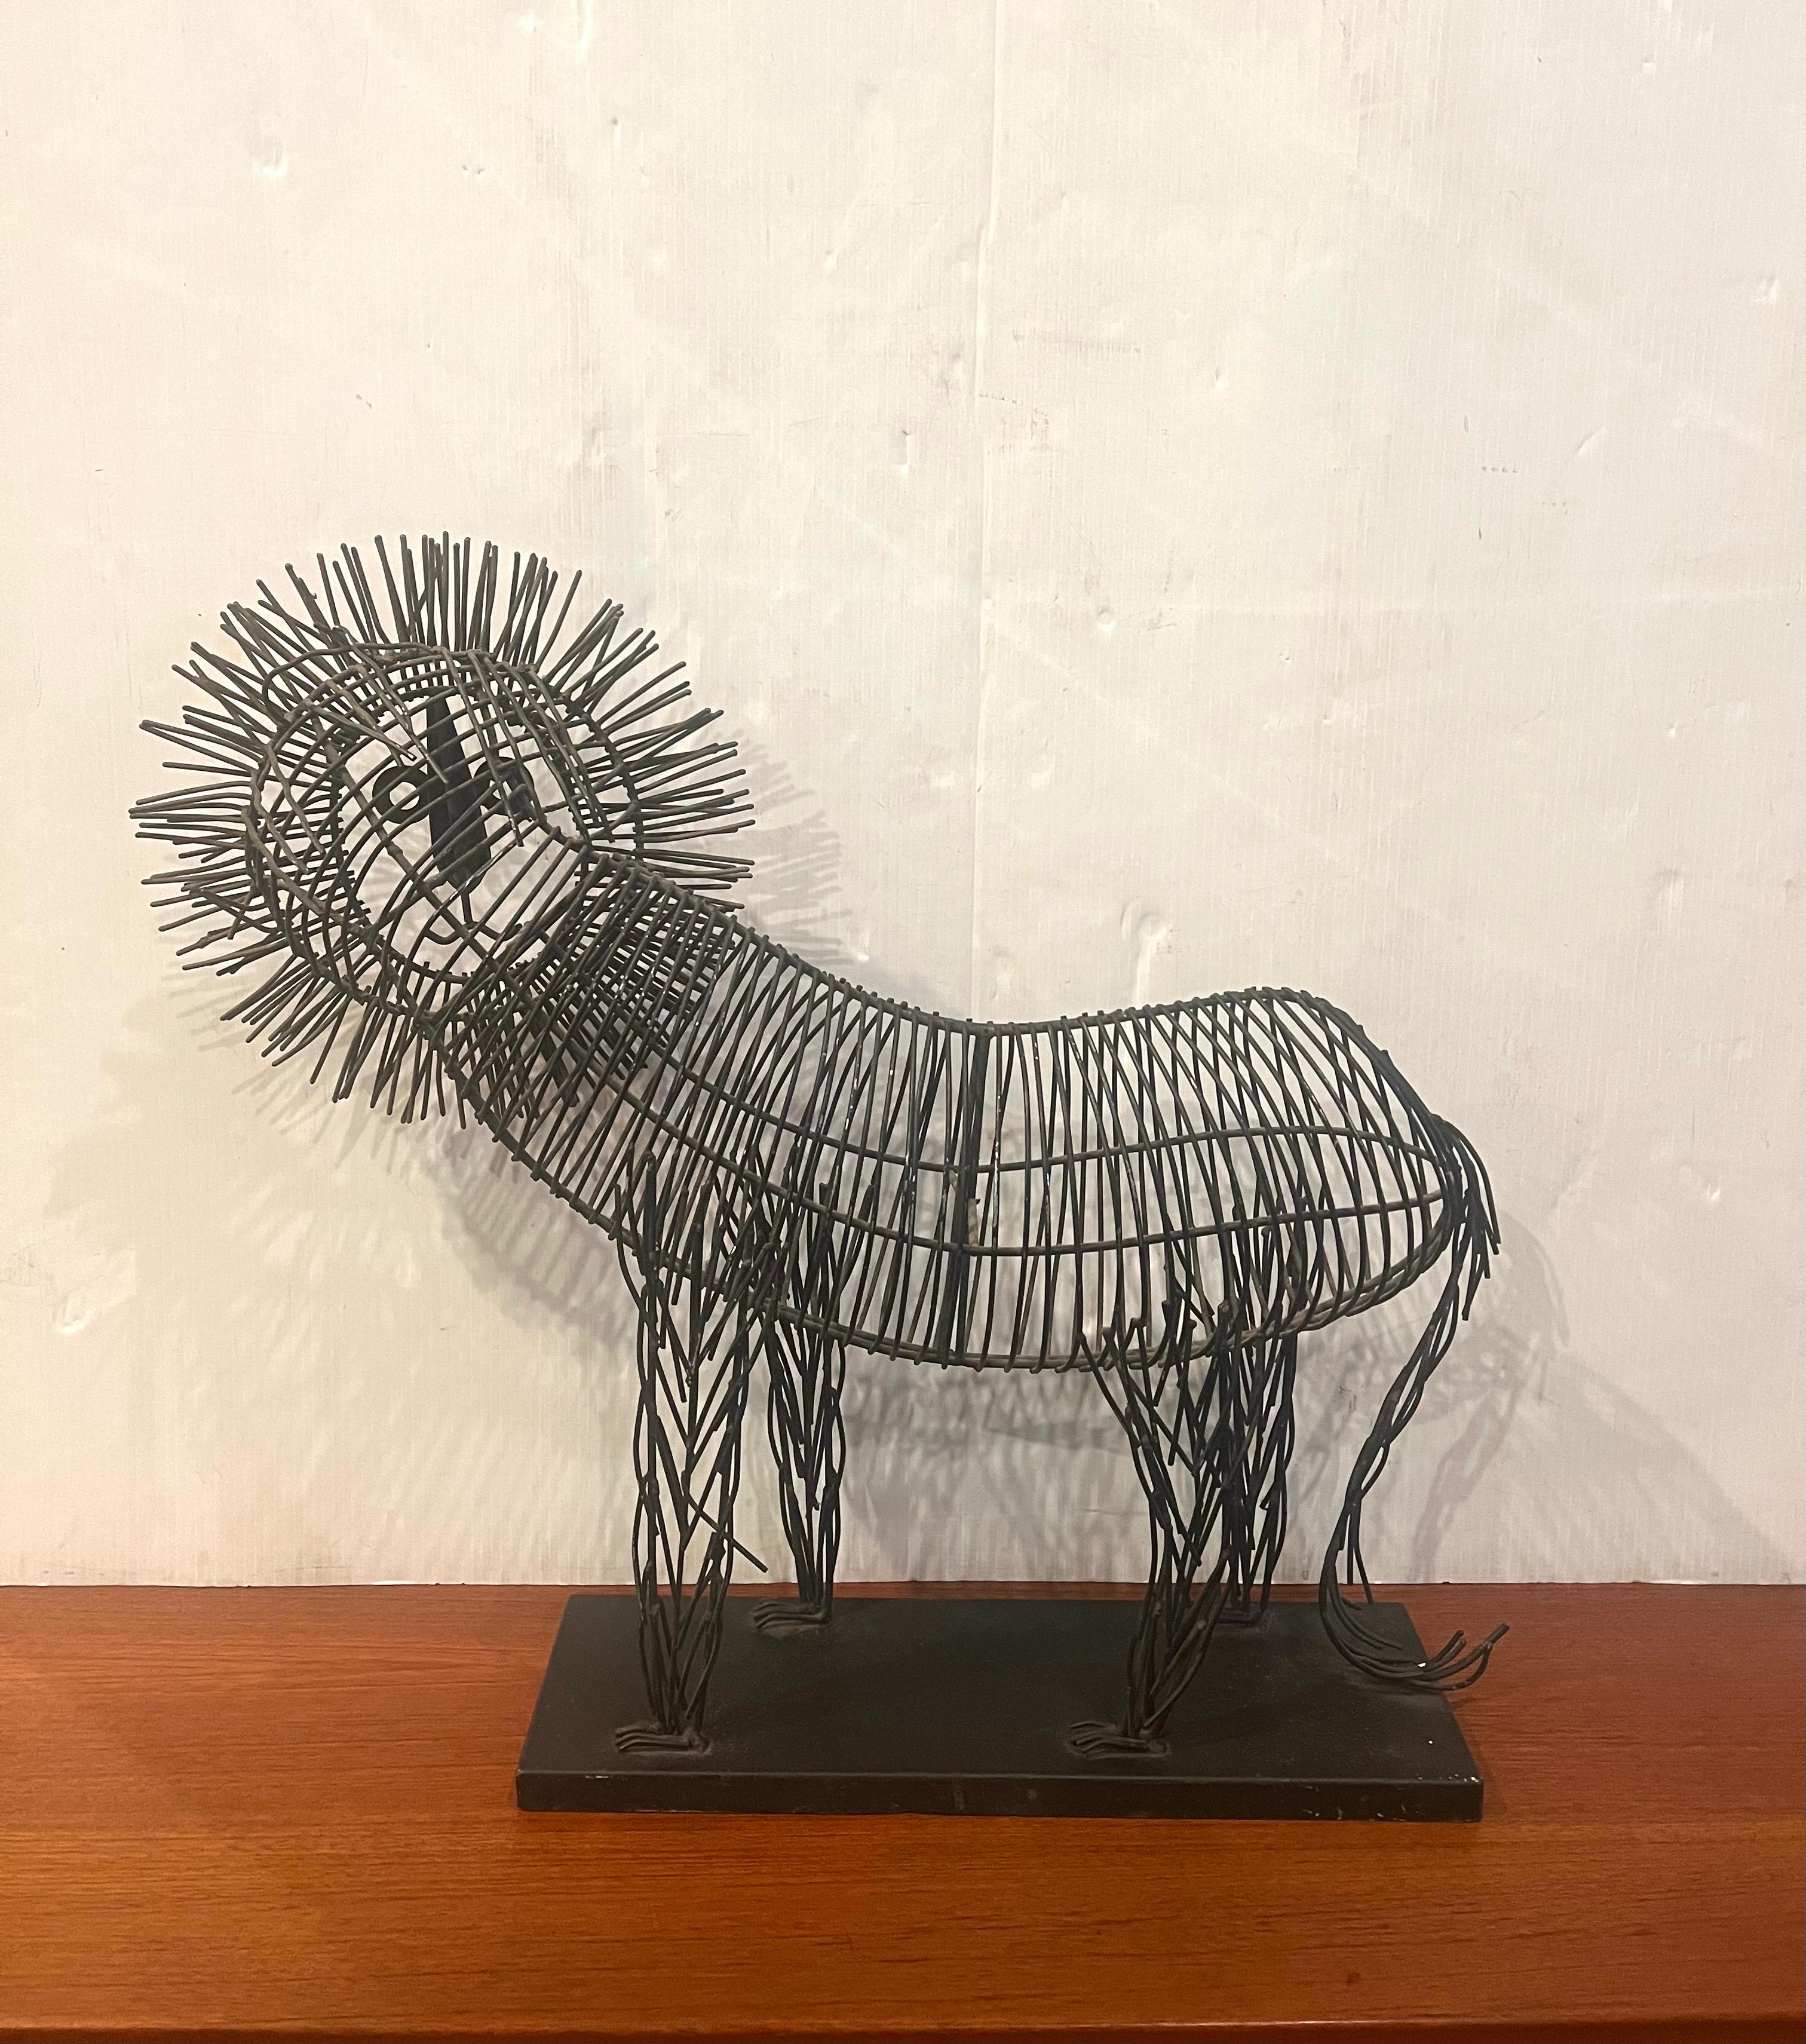 Metalldraht große und seltene Größe Skulptur eines Löwen auf einem schwarzen Metallsockel. Der Körper ist aus schwarzem Metalldraht und die Mähne ist goldfarben gefärbt. Im Stil von C. Jere, ca. 1990er Jahre.